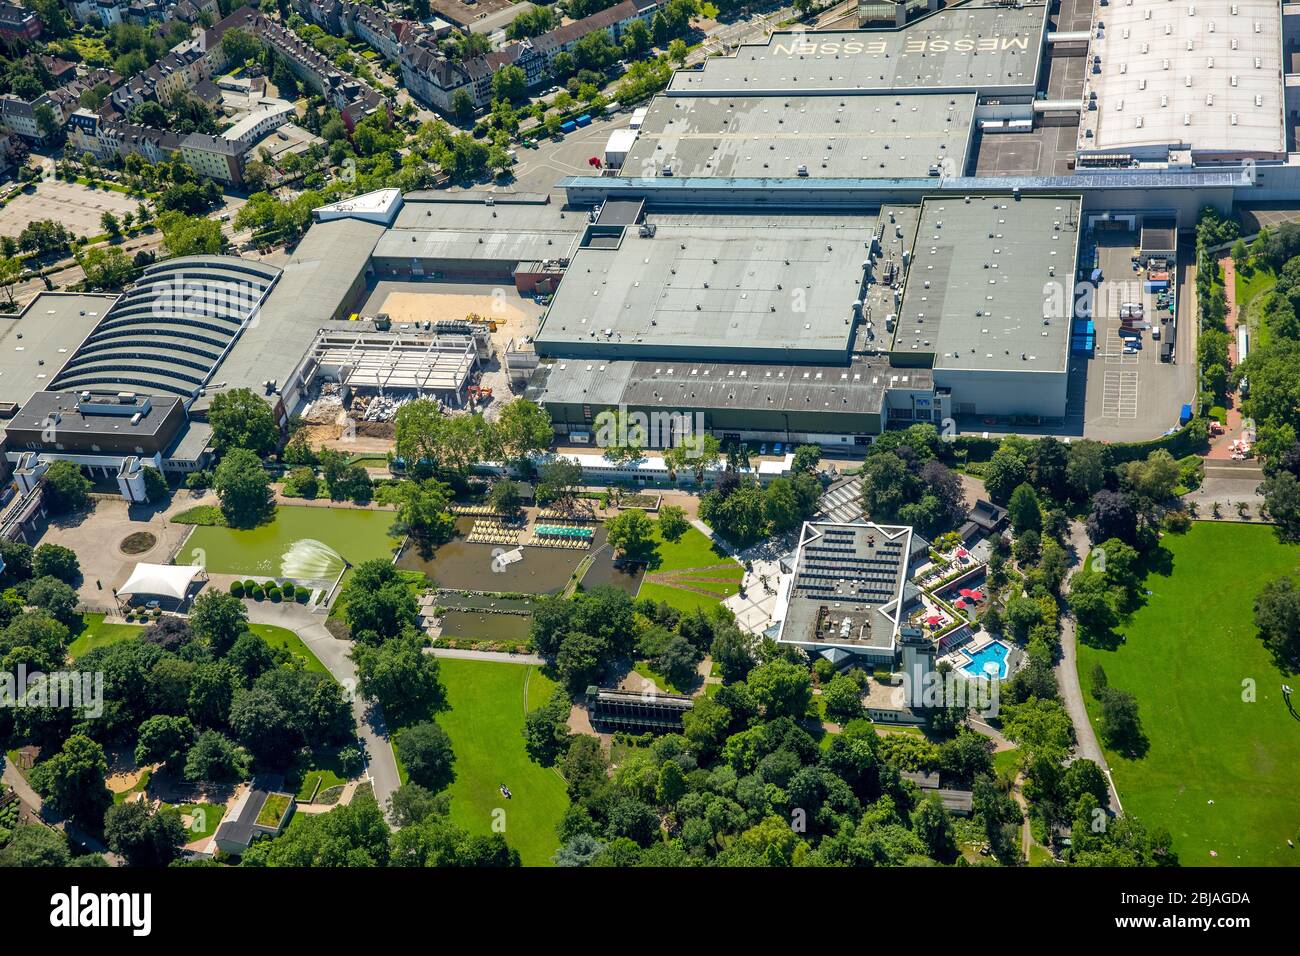 Salas de exposiciones de Messe Essen, en primer plano es el parque Gruga, Gruga thermae, 23.06.2016, vista aérea, Alemania, Renania del Norte-Westfalia, Ruhr Area, Essen Foto de stock